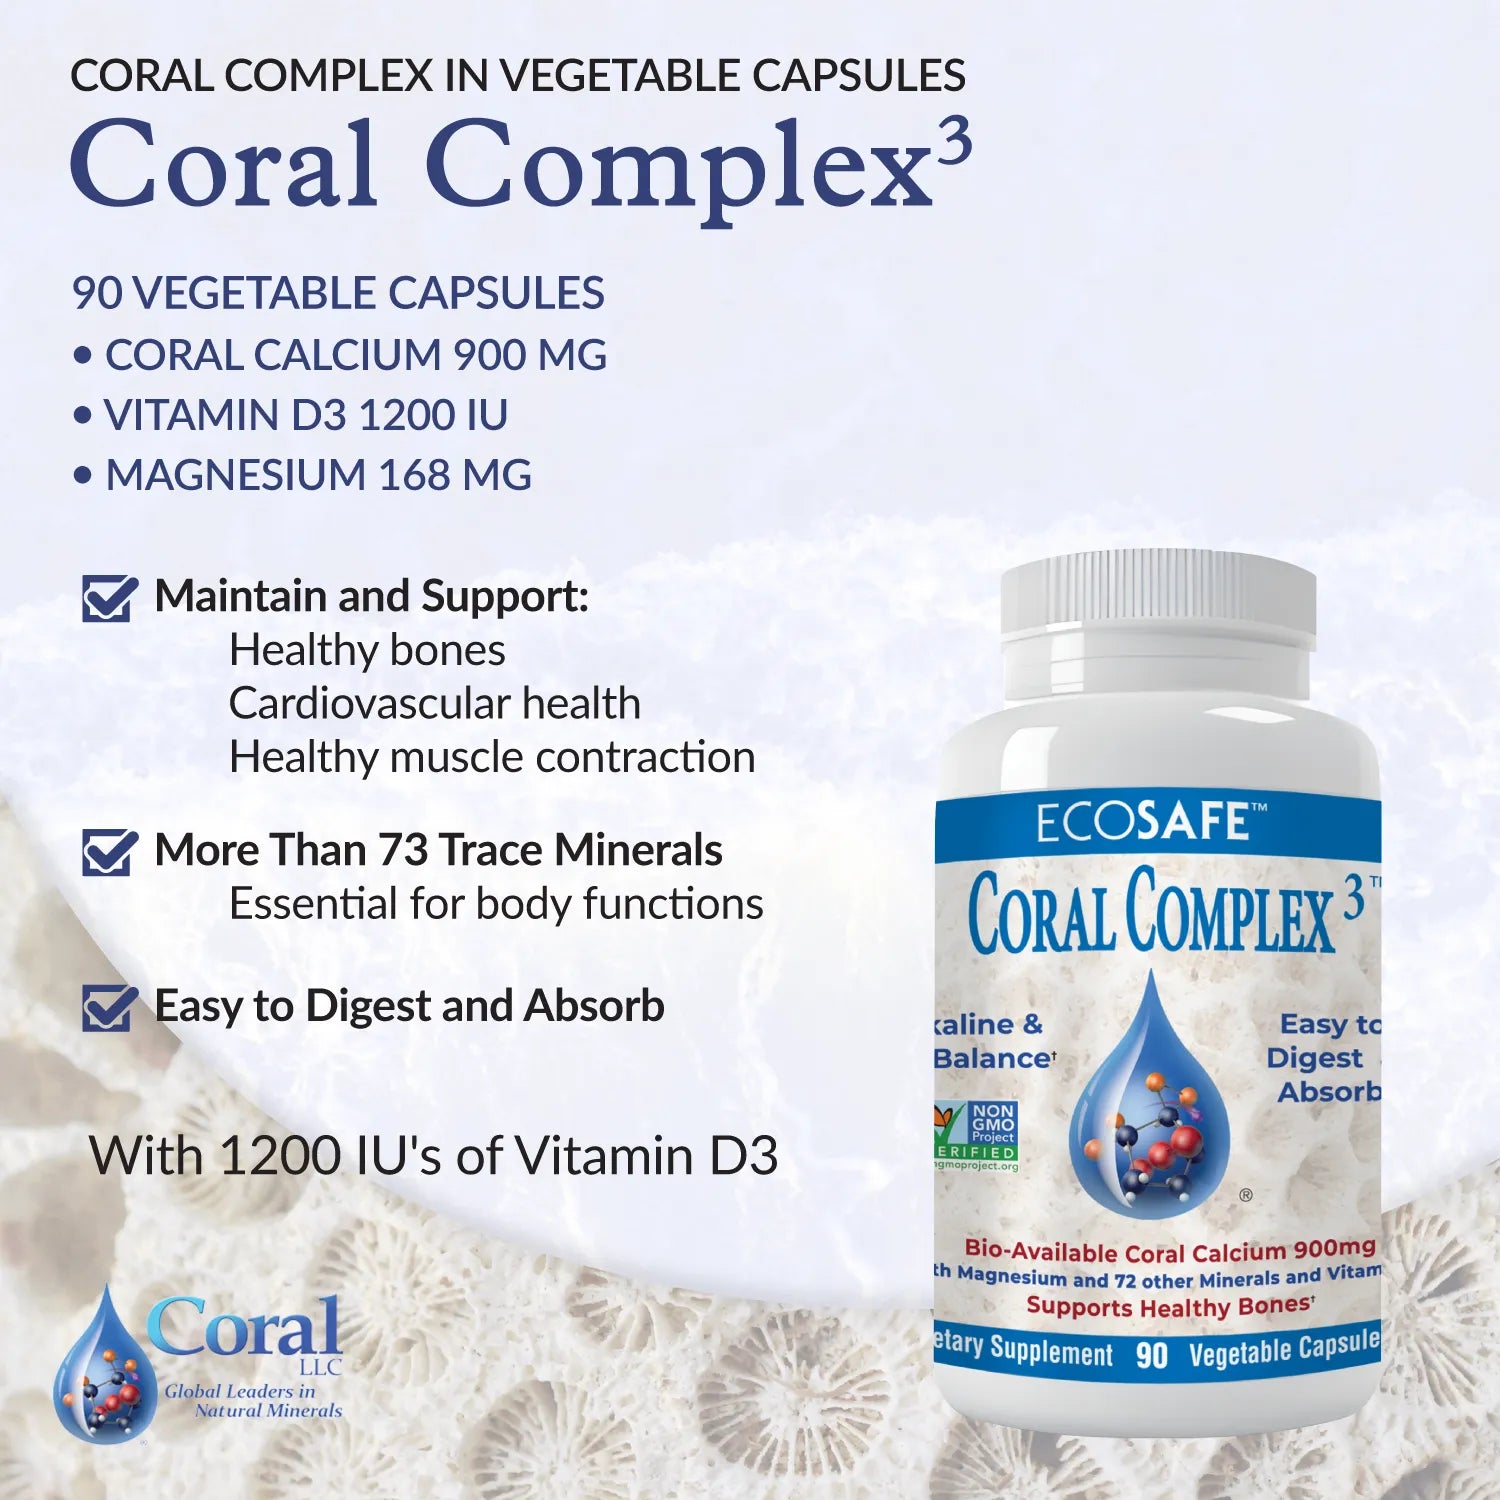 Coral Complex 3 for healthy bones